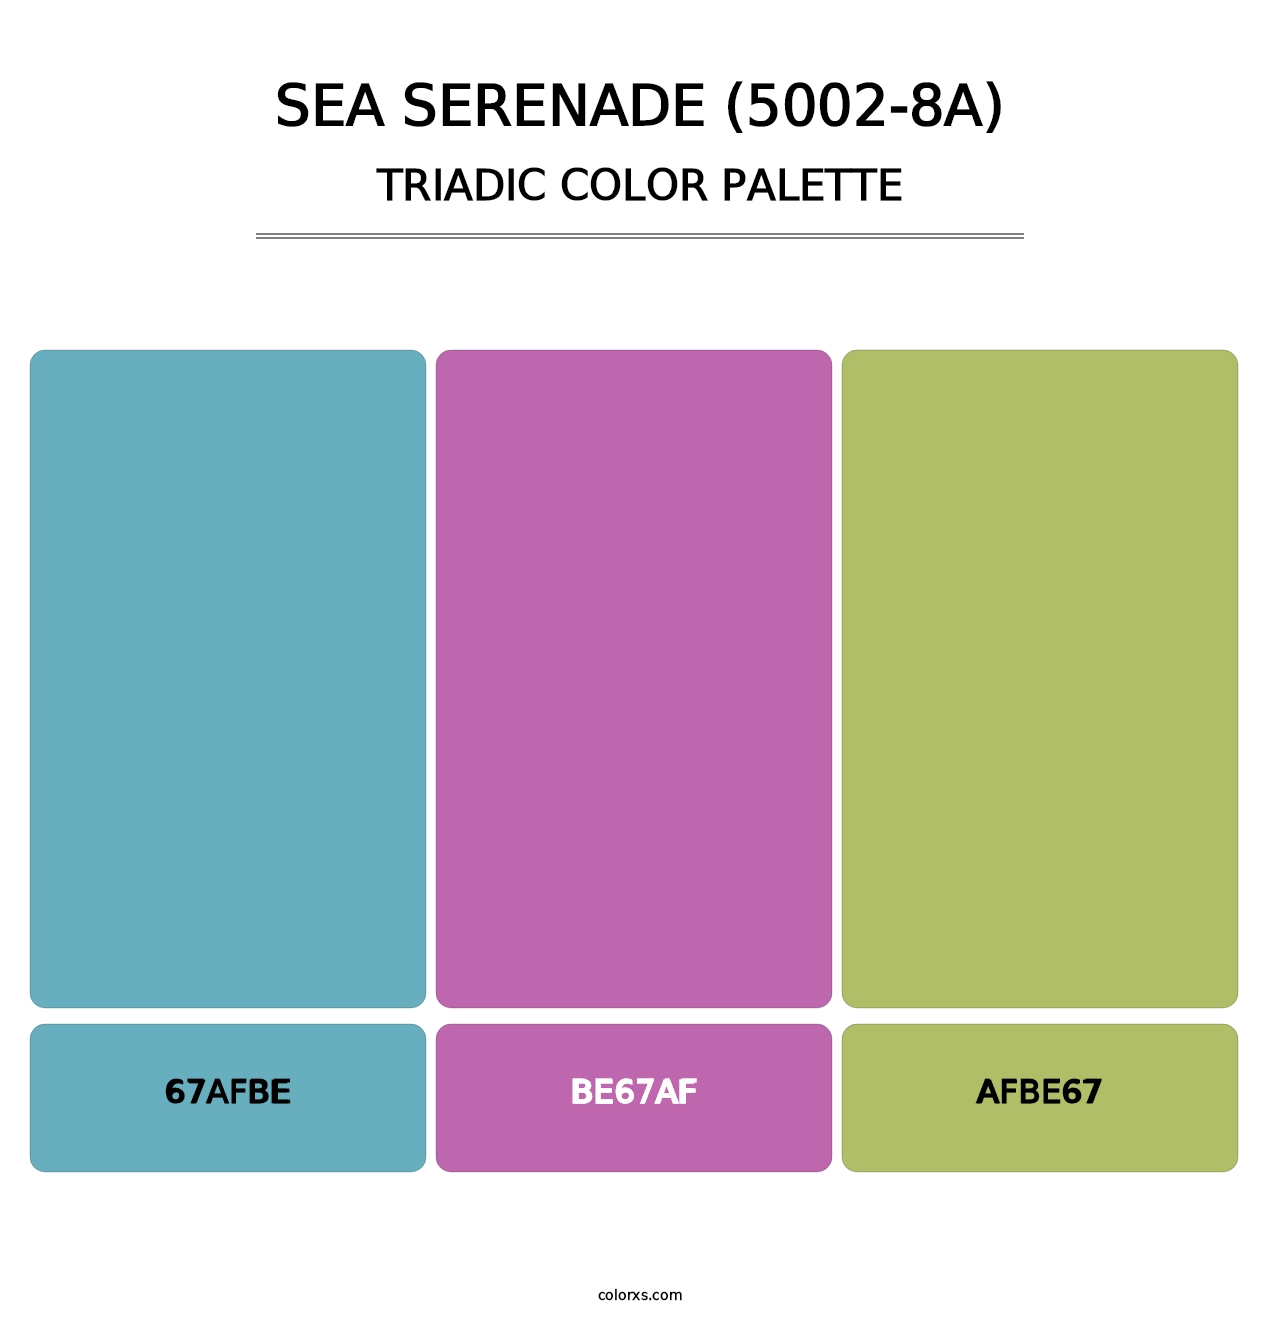 Sea Serenade (5002-8A) - Triadic Color Palette